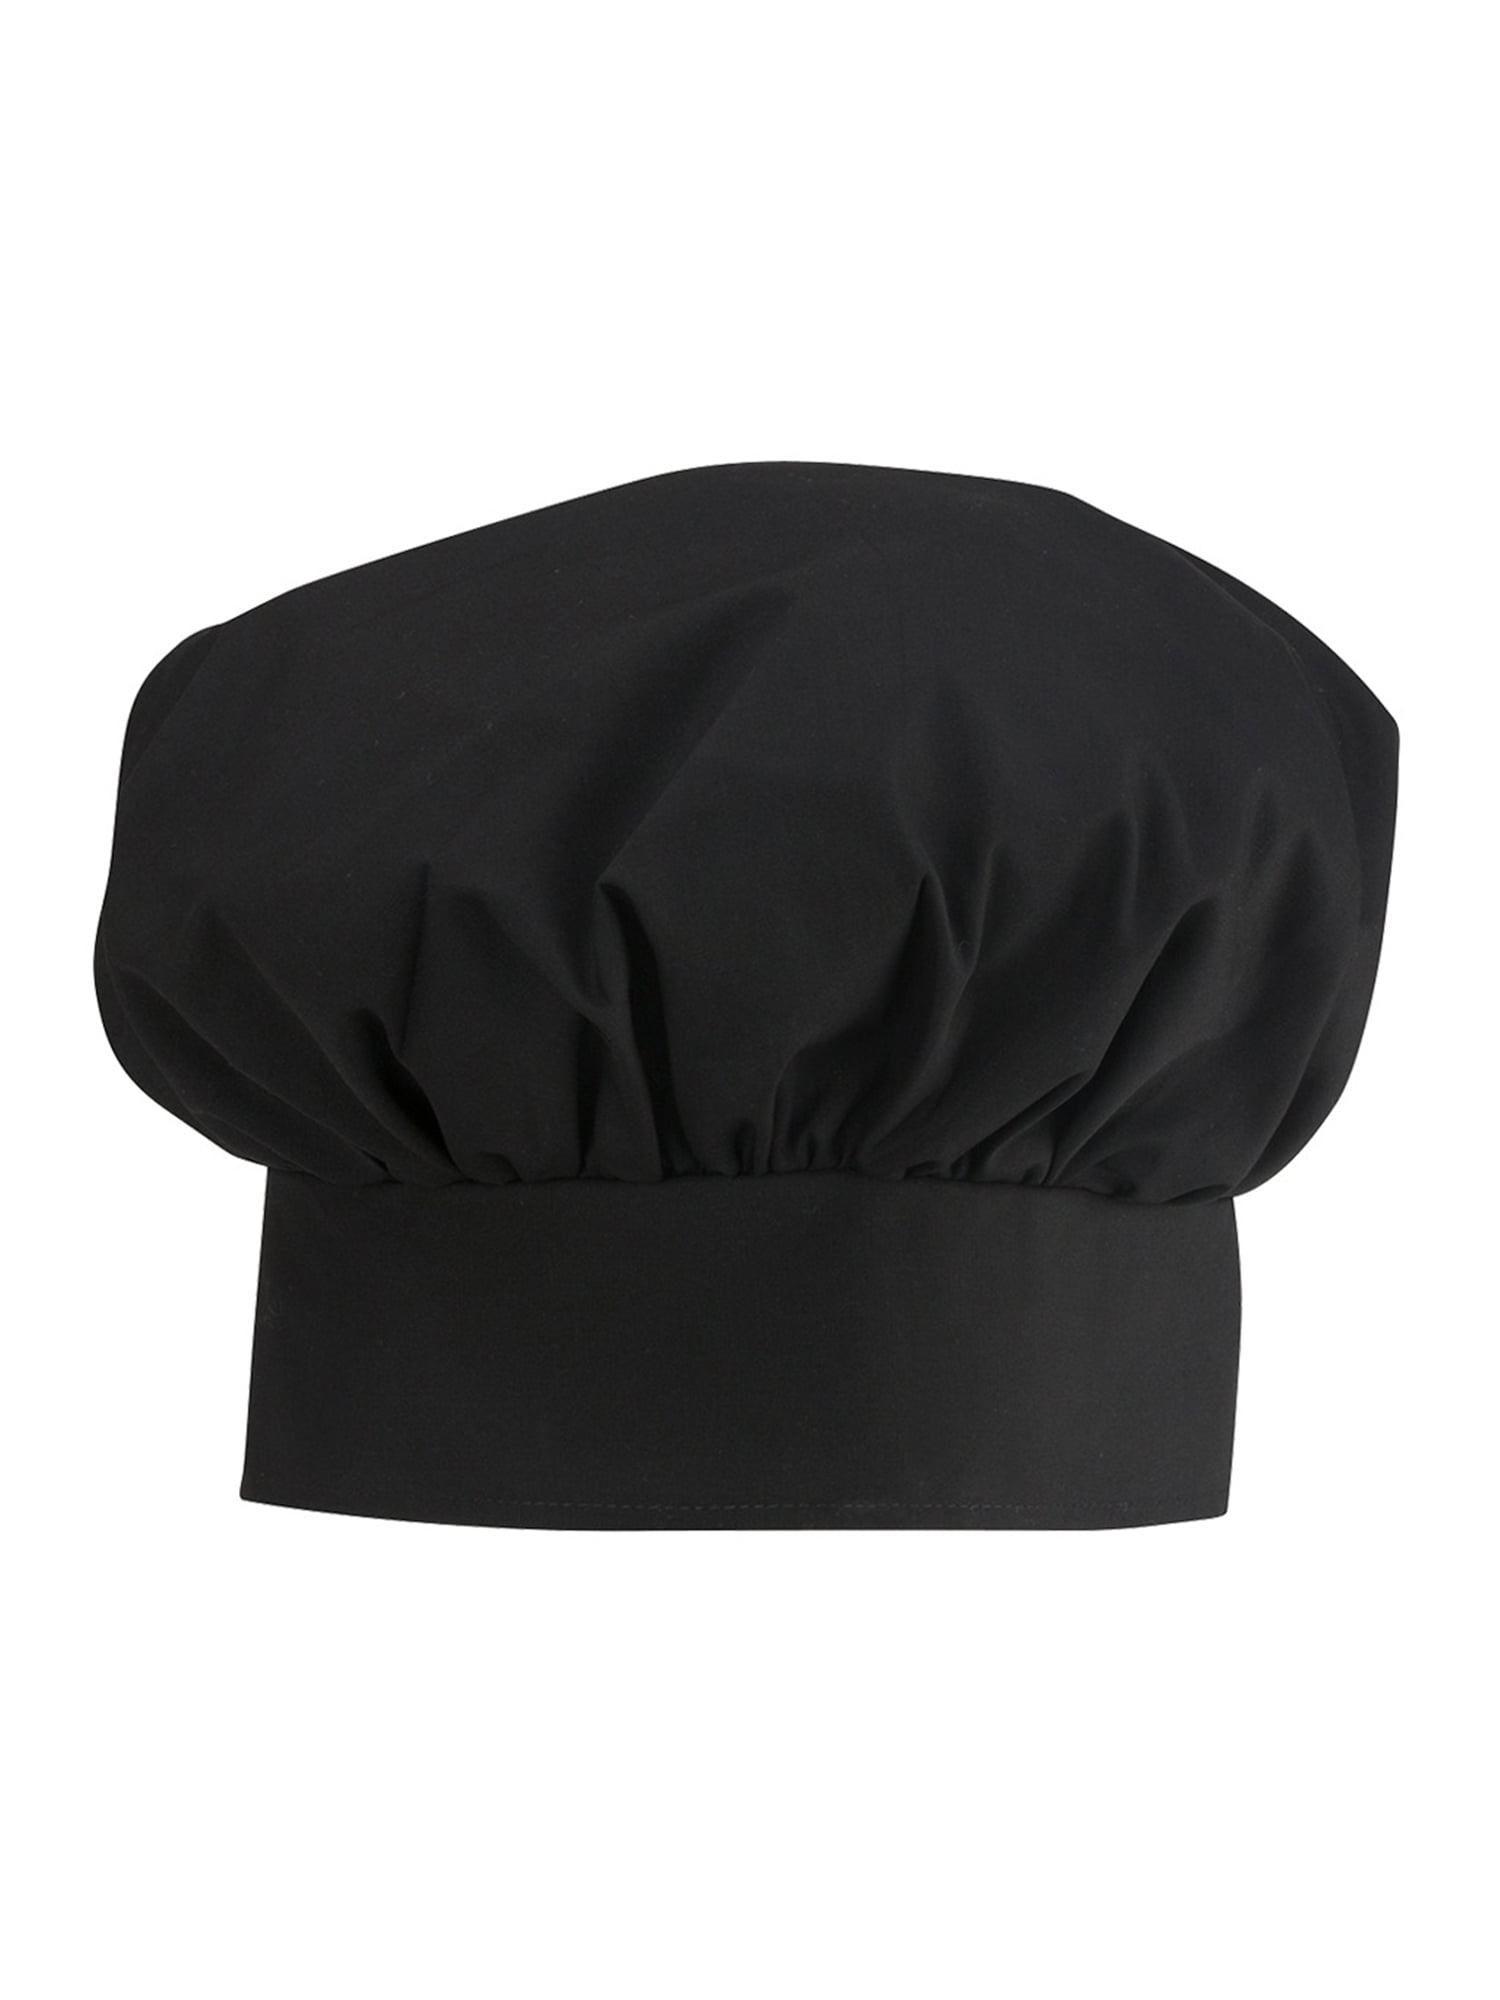 Leber&Hollman LH-Skuller_Bxxl Chefs Kitchen Protective Chef Hat Black 60-62 cm Size XX-Large 